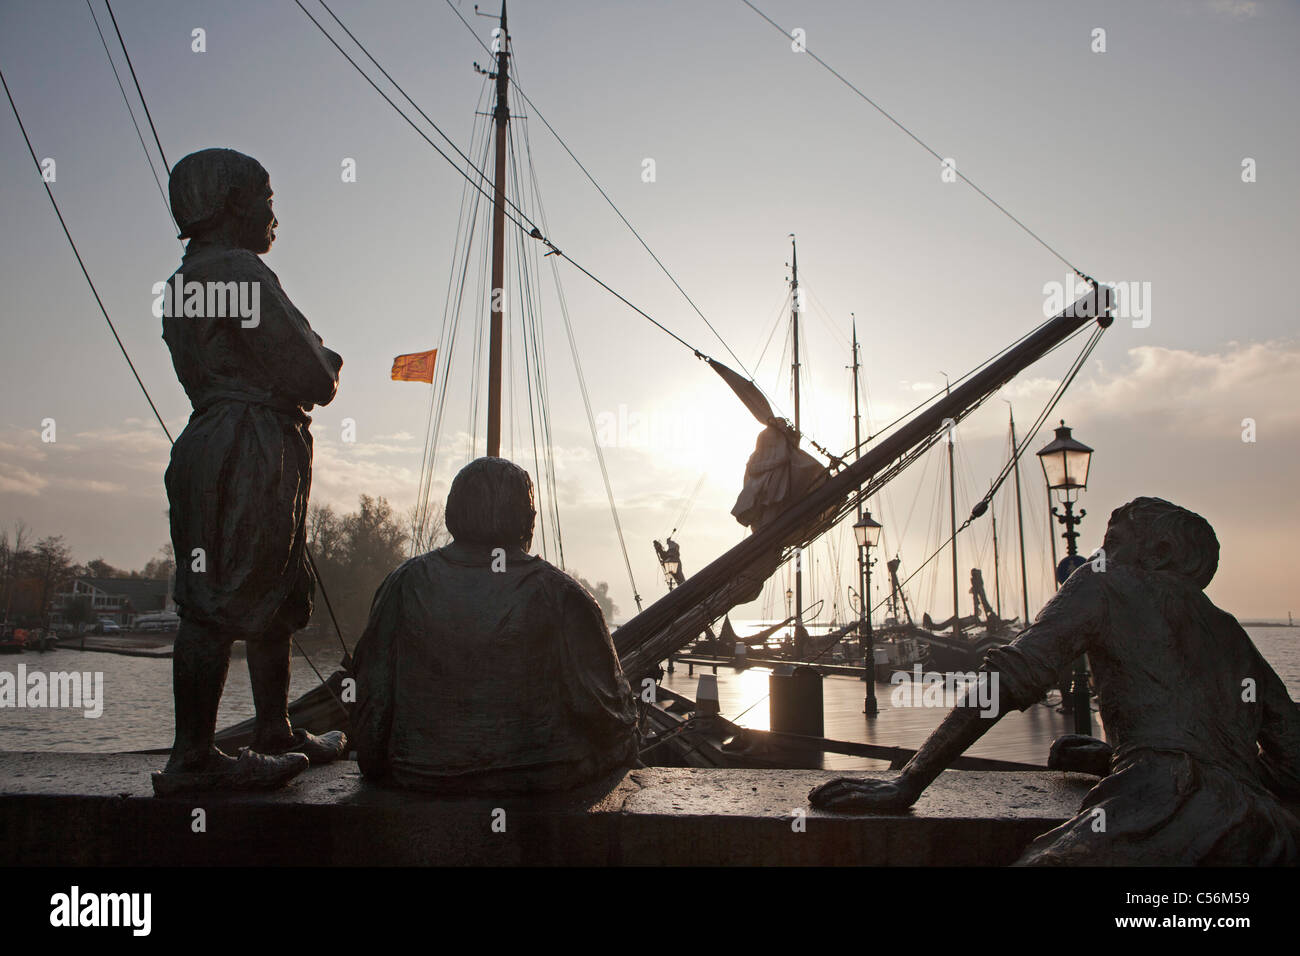 The Netherlands, Hoorn, Statues in harbour called Jongens van Bontekoe. Stock Photo